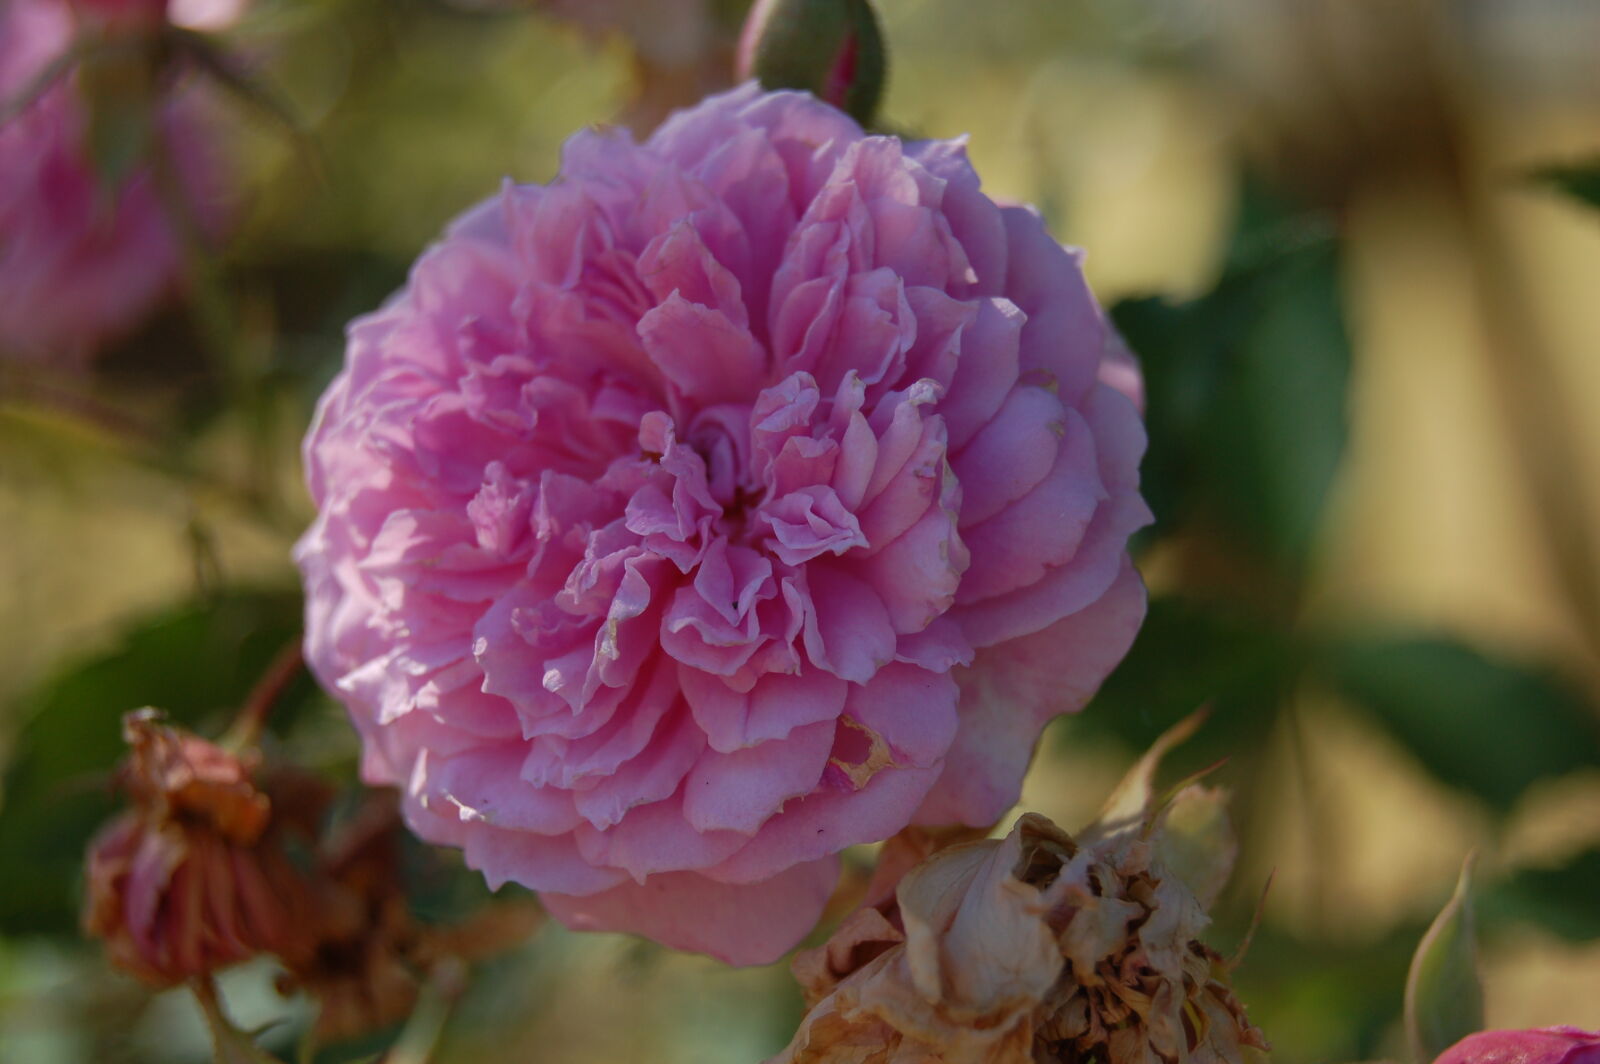 AF-S DX Zoom-Nikkor 18-55mm f/3.5-5.6G ED sample photo. Flower, garden, pink, flower photography